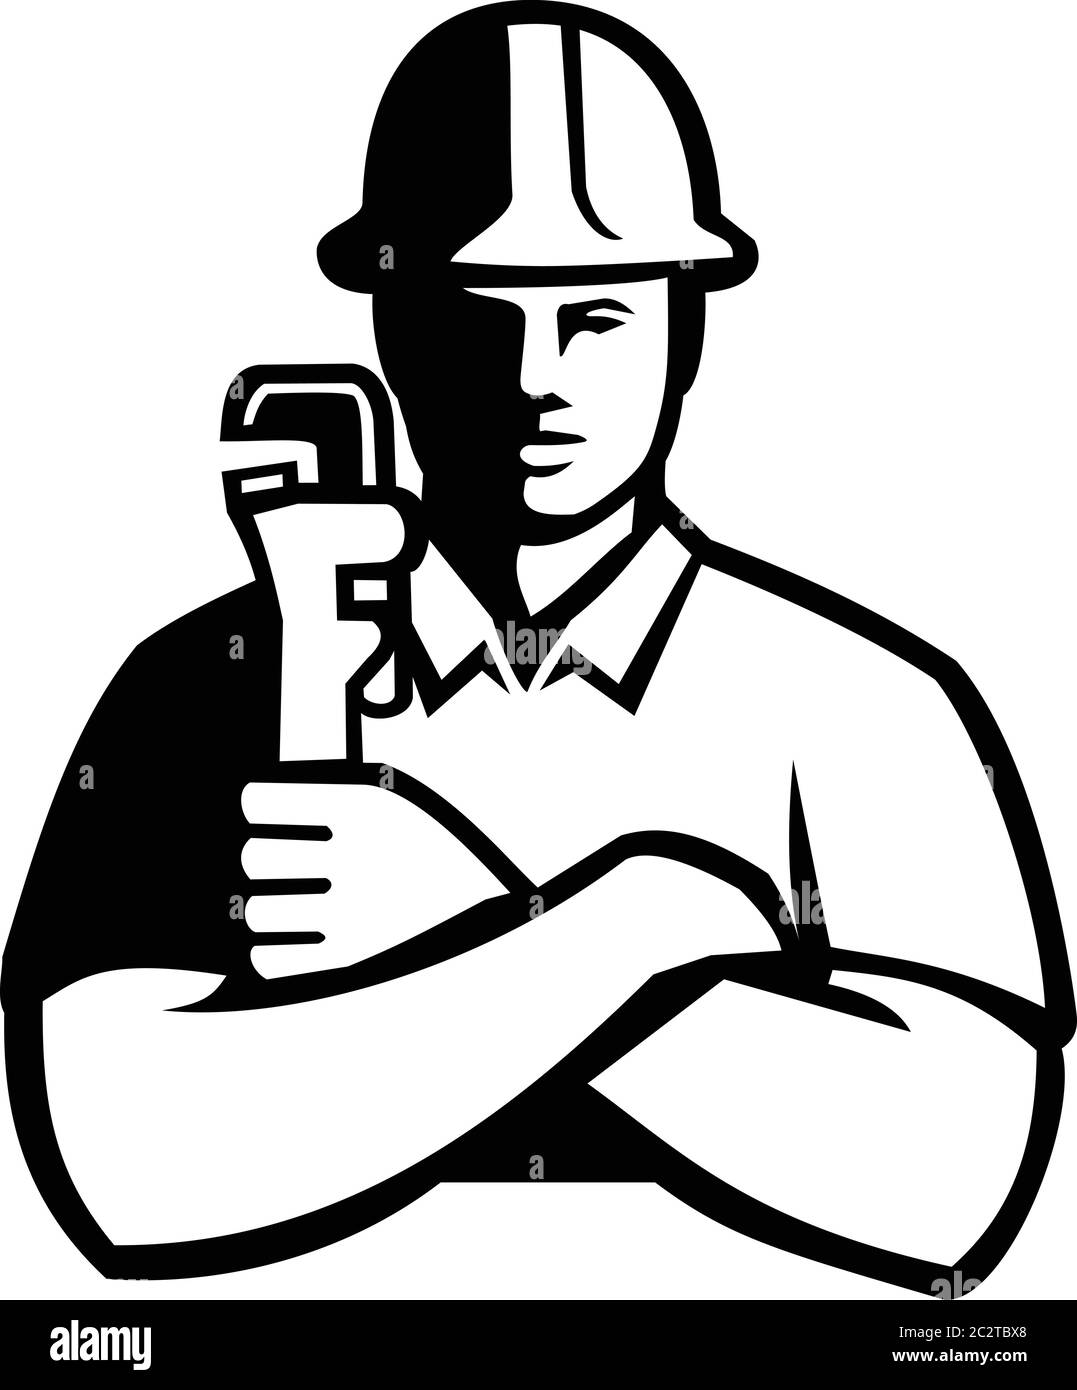 Schwarz-weiß Abbildung eines Rohrschlosses, ein Handwerker, der mechanische Rohrleitungssysteme installiert, fertigt, instand hält und repariert, holdimg a pipe wre Stock Vektor